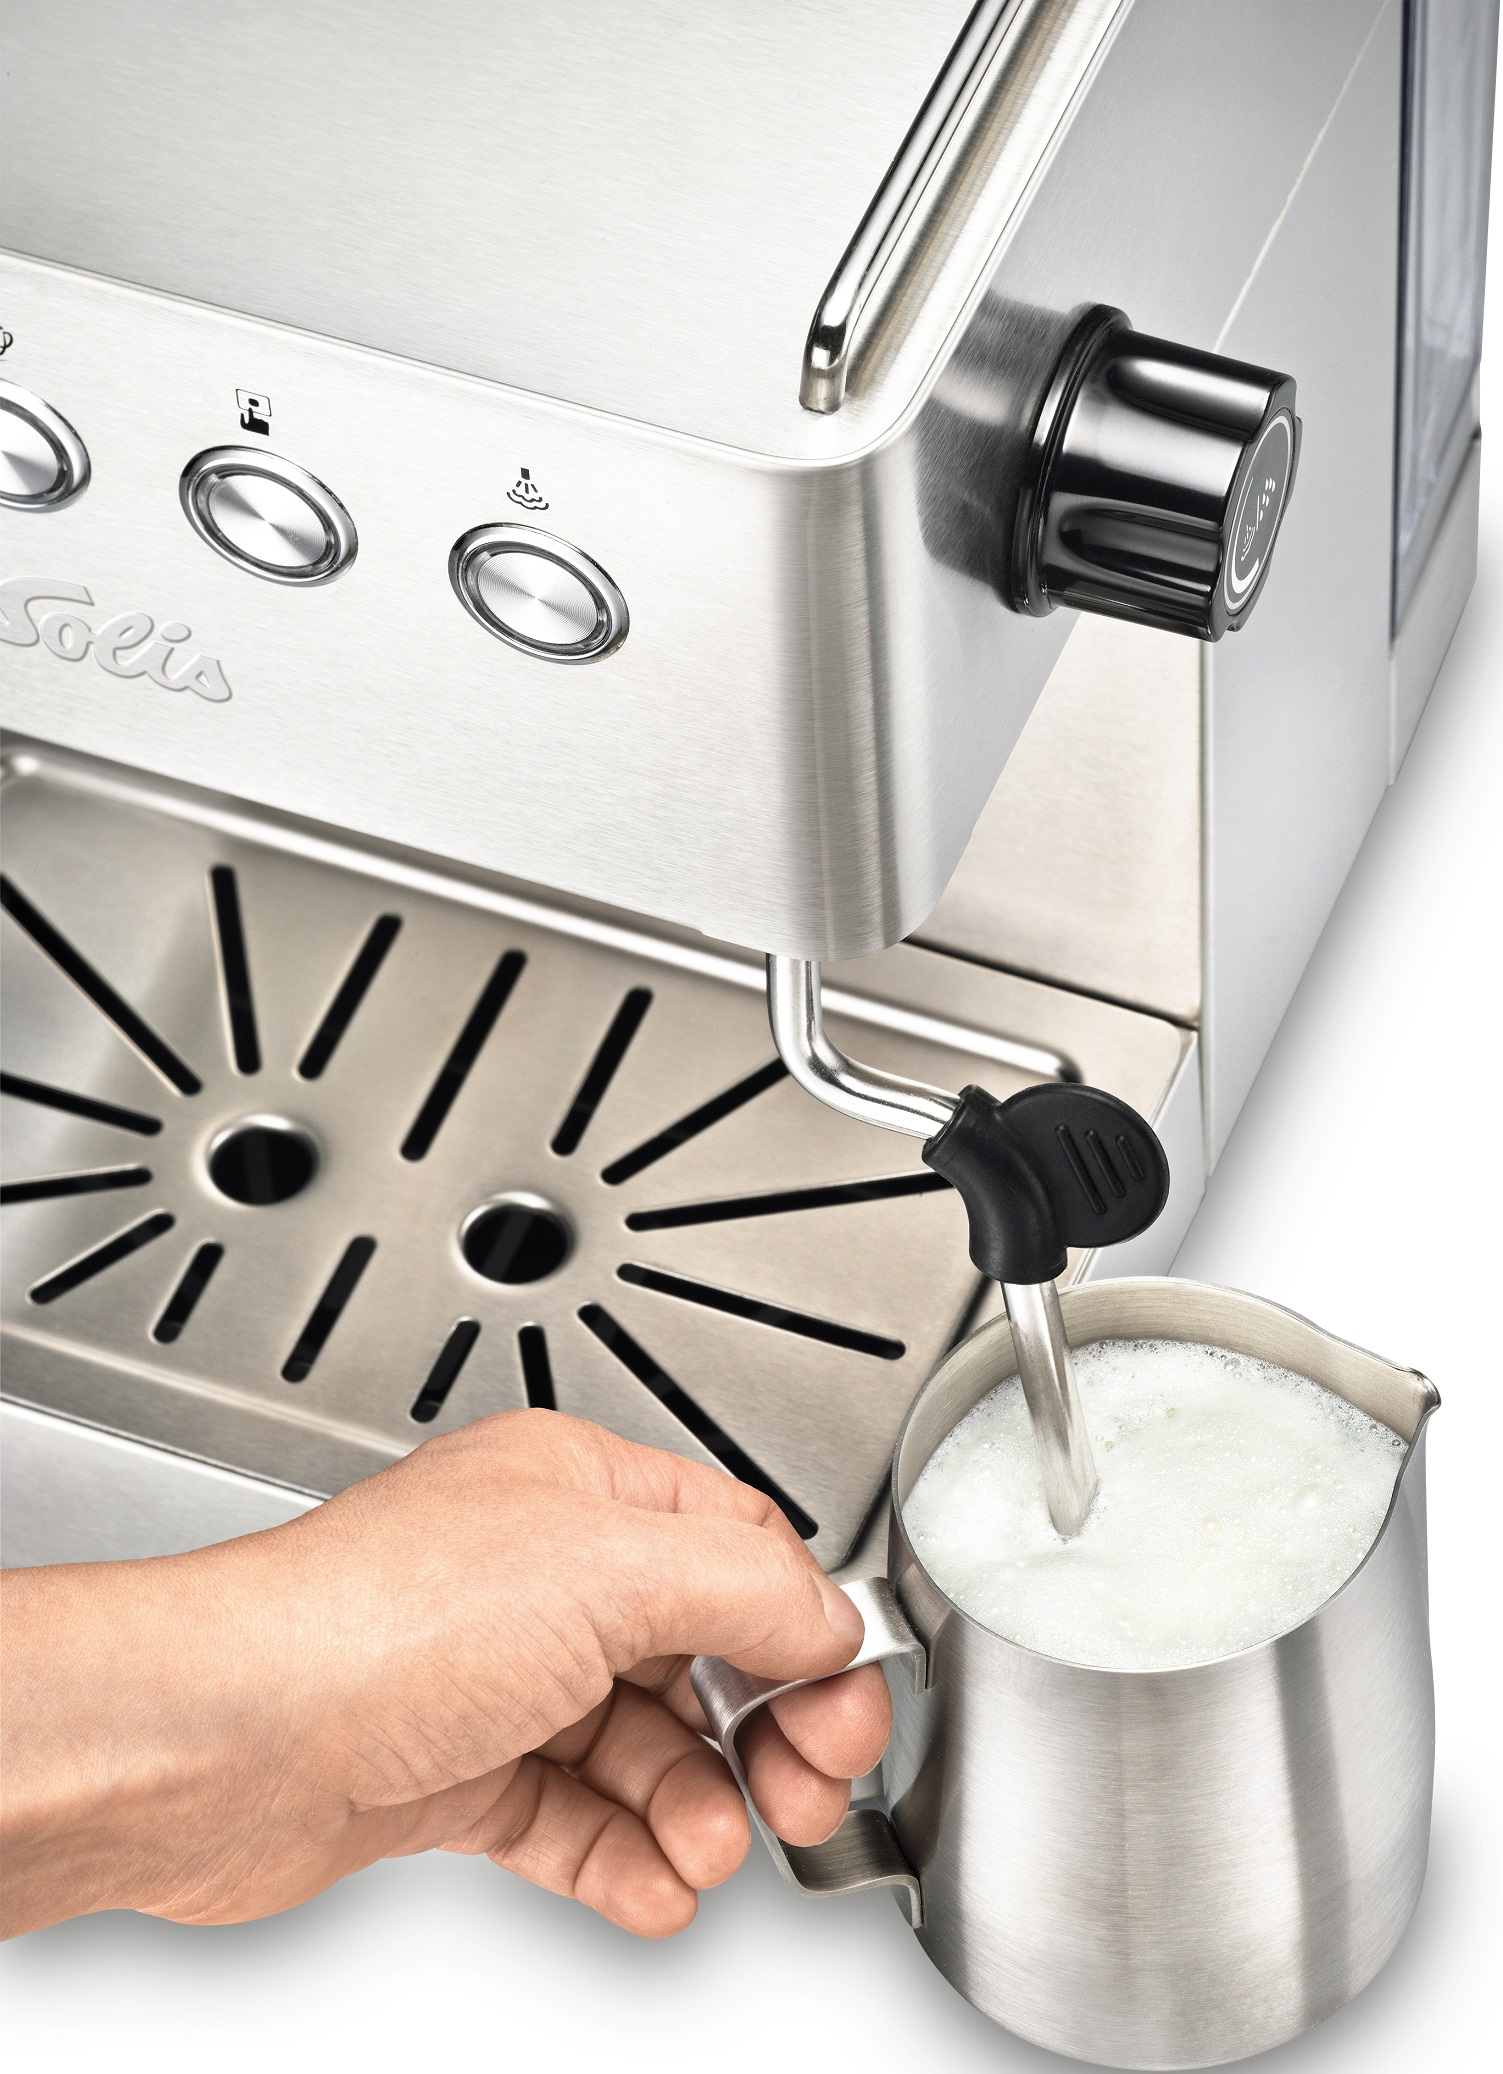 Espressomaschine OF SWITZERLAND Gusto Milchaufschäumer Barista Siebträgermaschine Gran 1014 | | SOLIS Silber